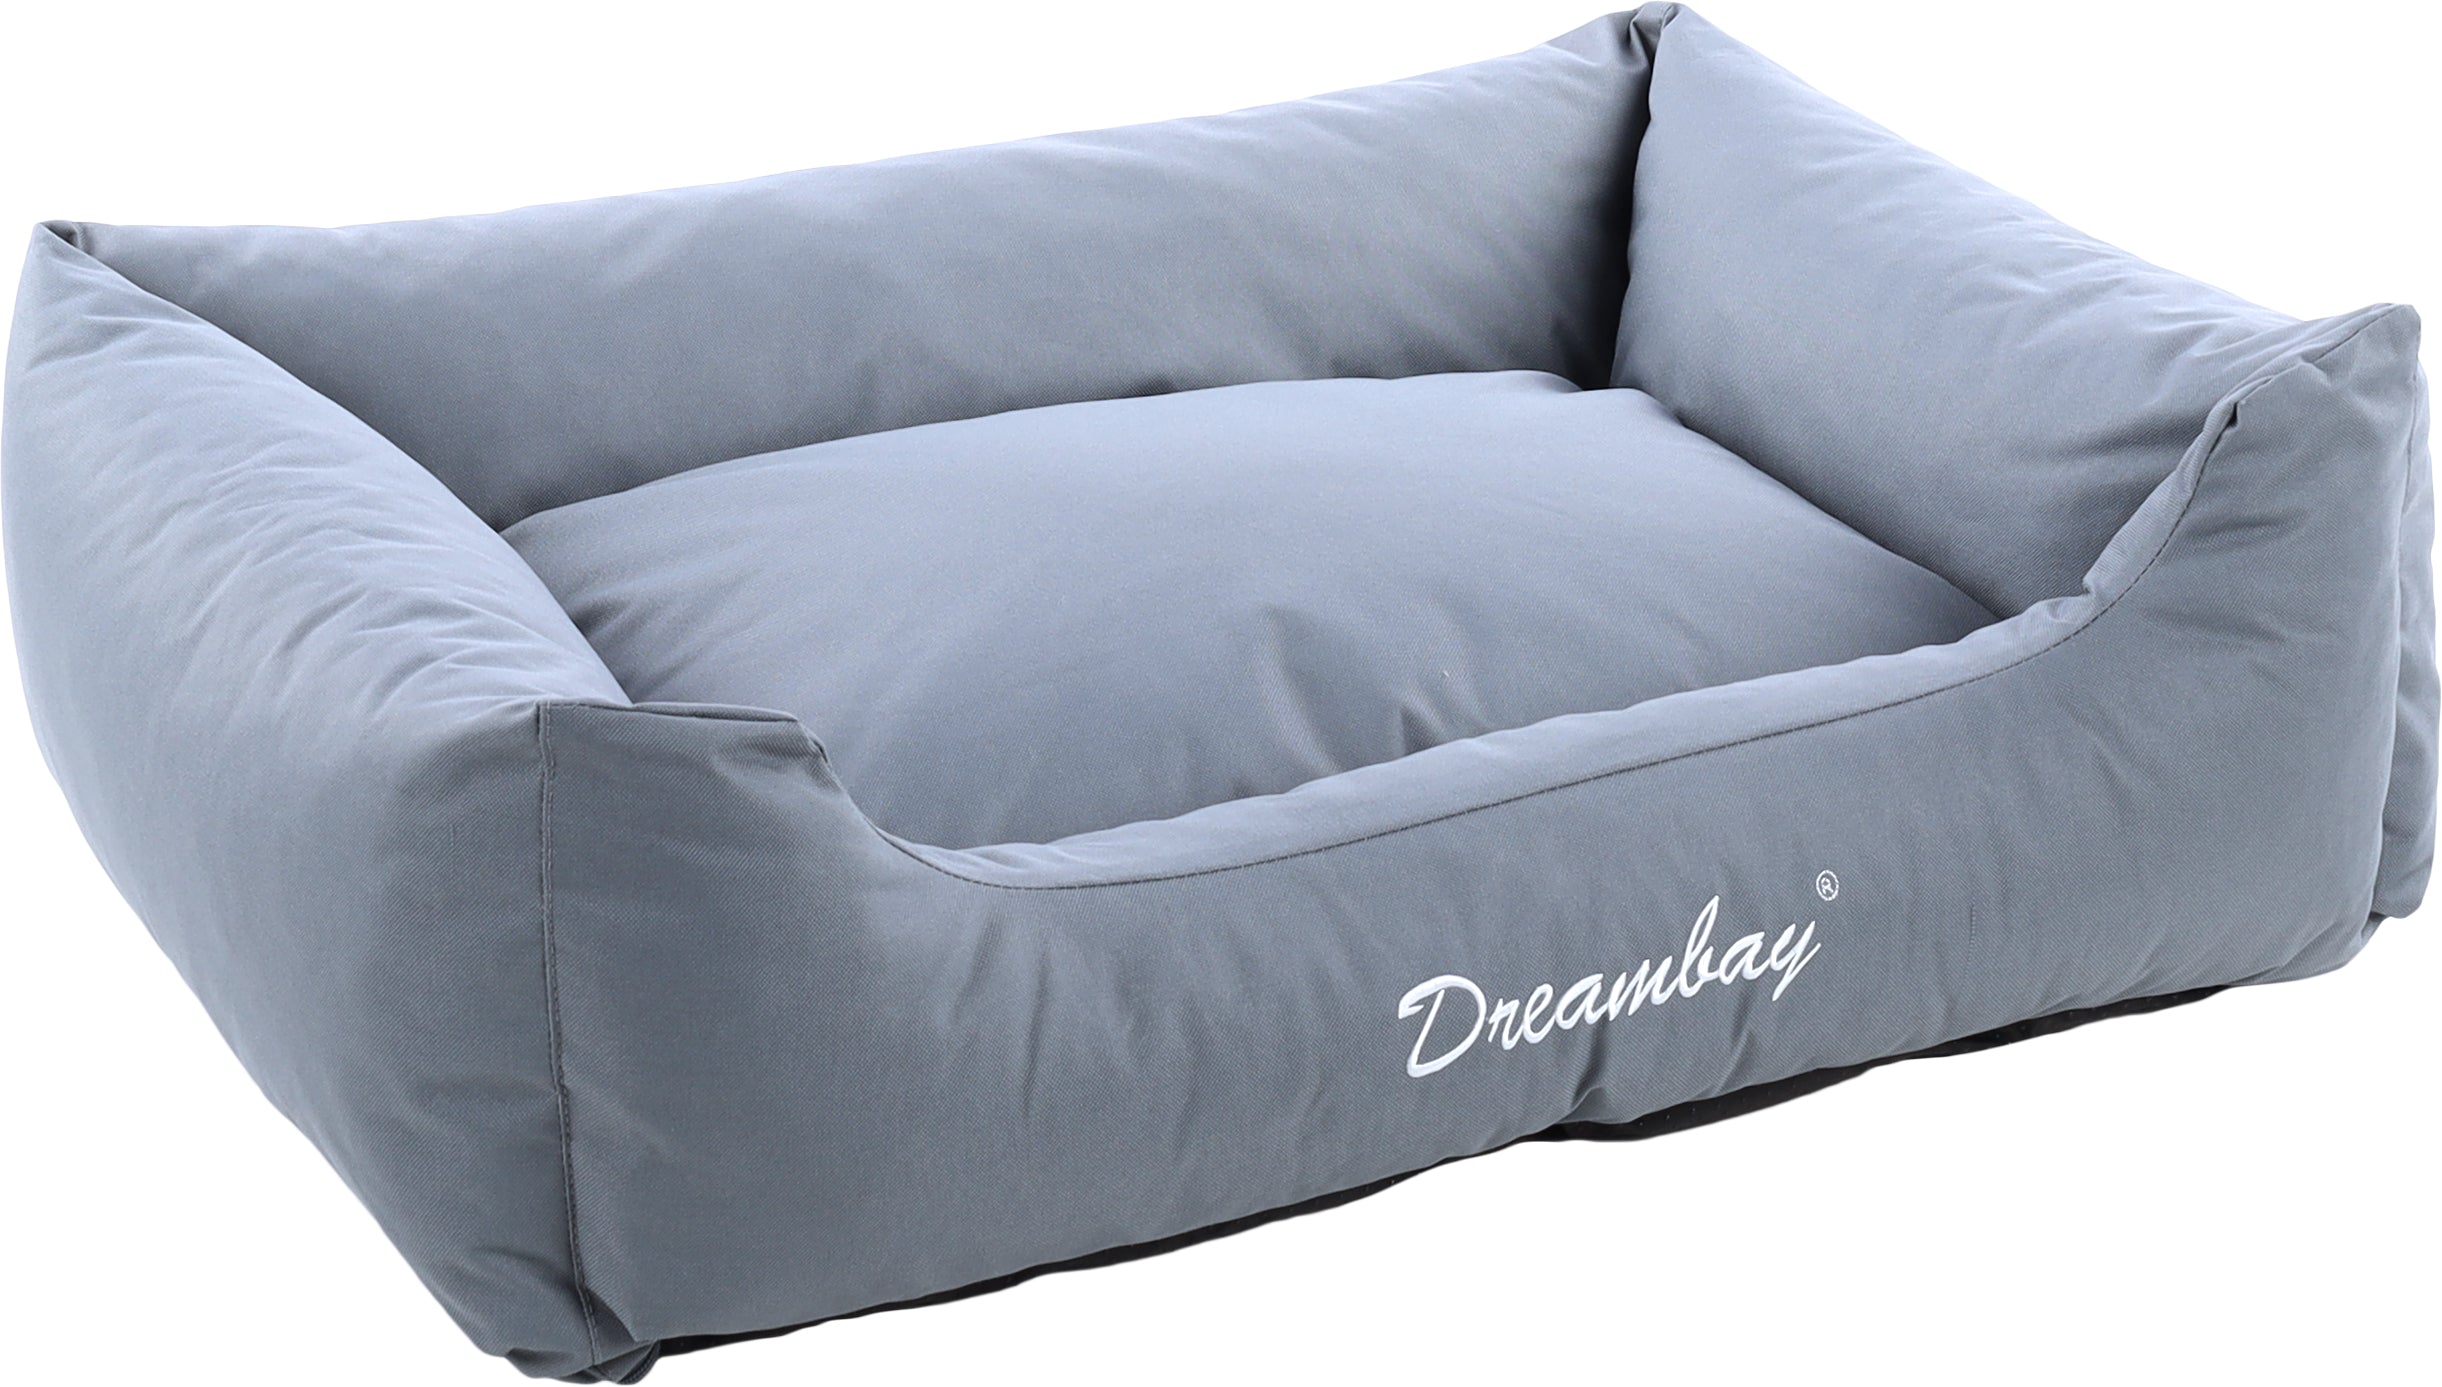 Hondenmand Dreambay rechthoekig grijs - Huisdierplezier